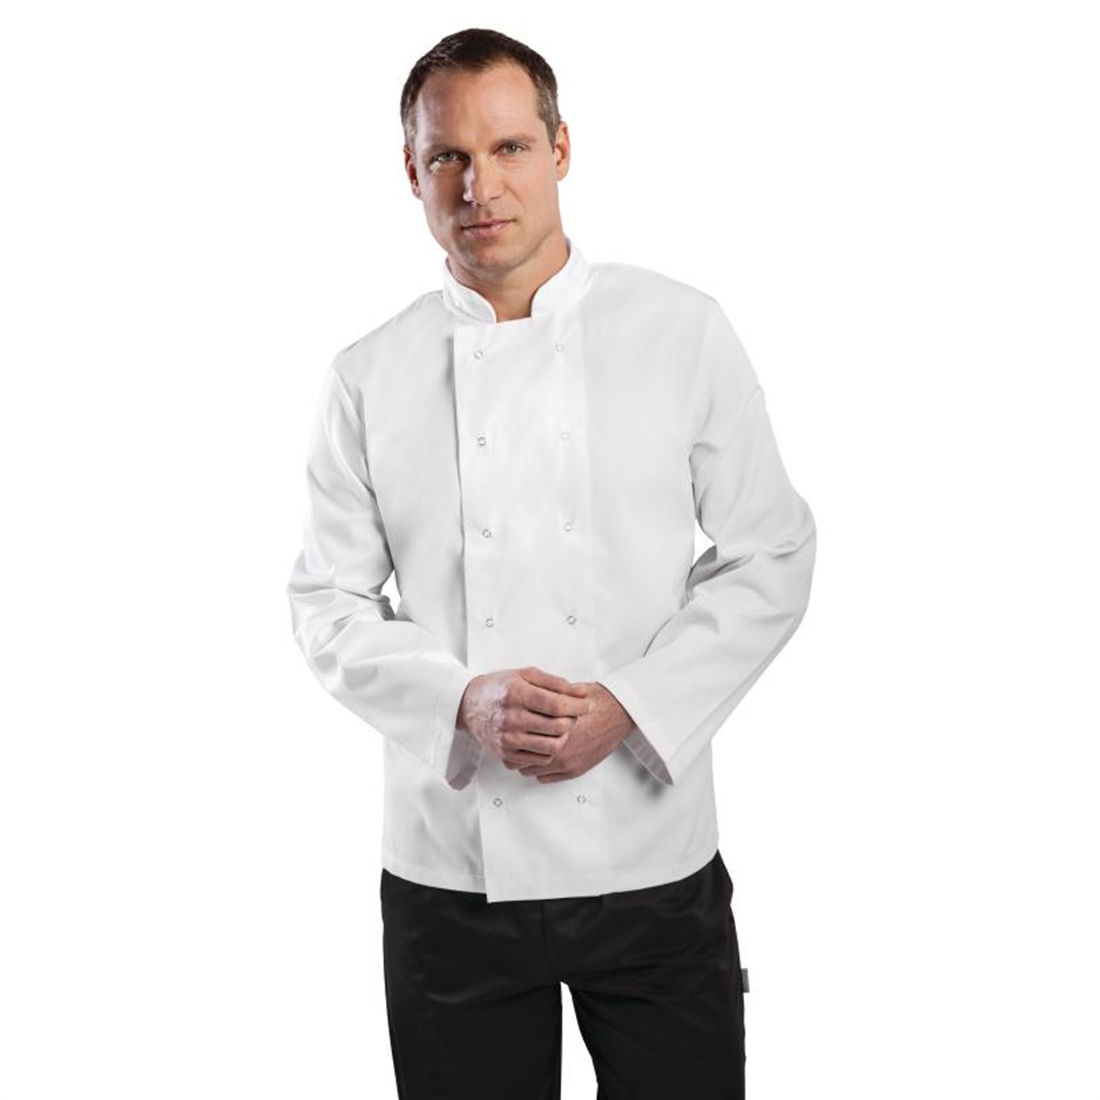 Whites Vegas Chef Jacket Long Sleeve White - M